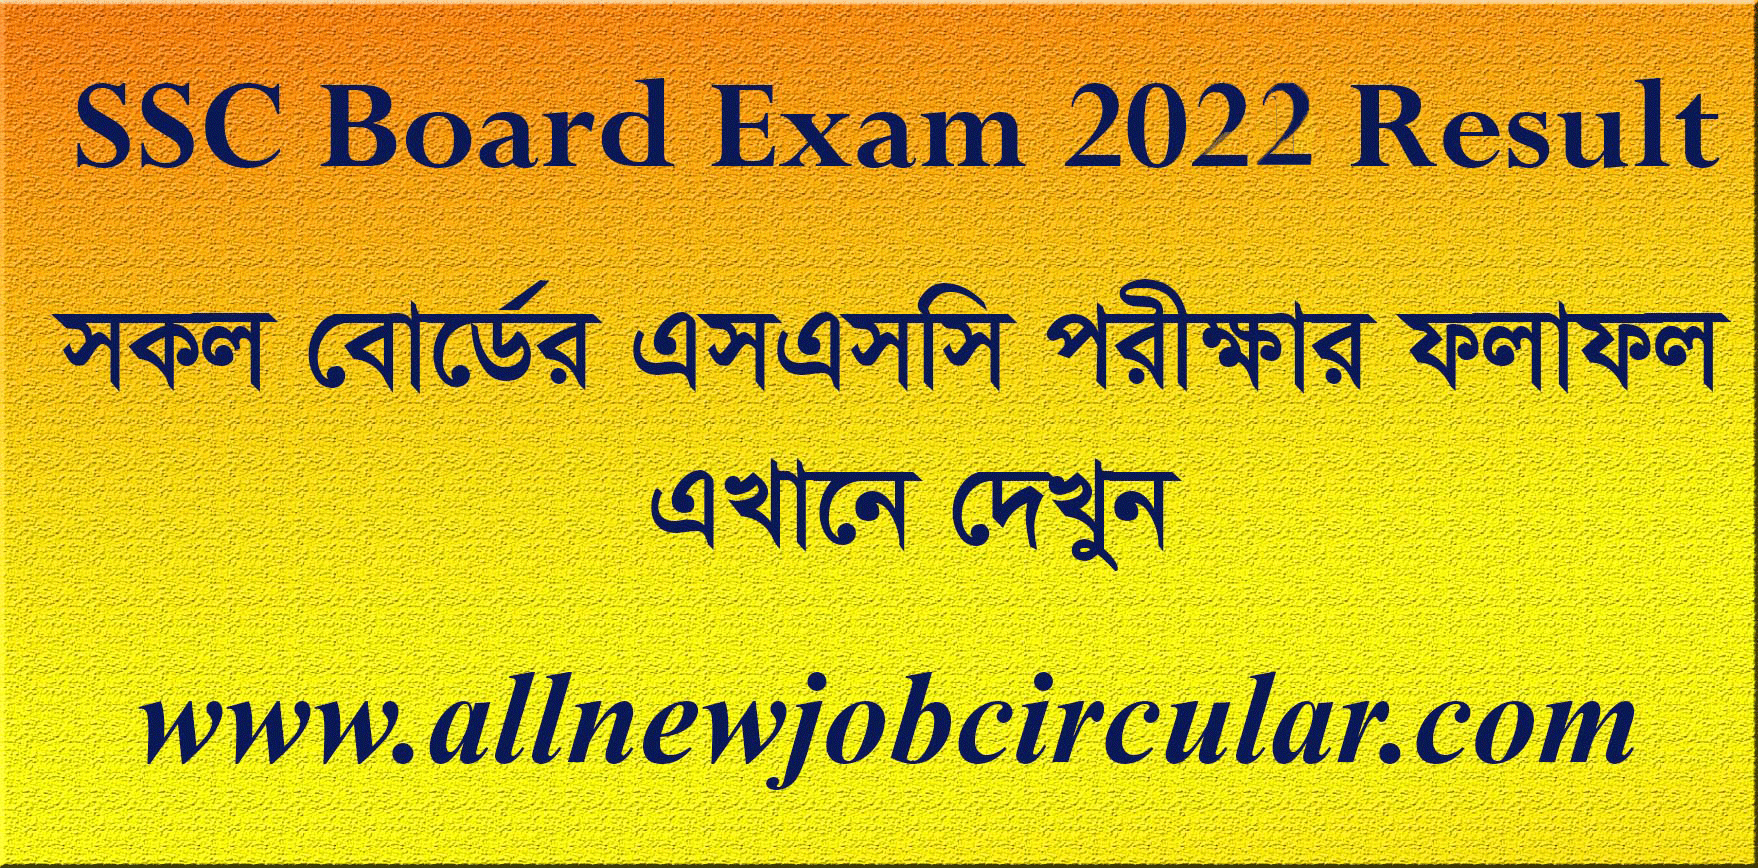 ssc-board-exam-2022-result